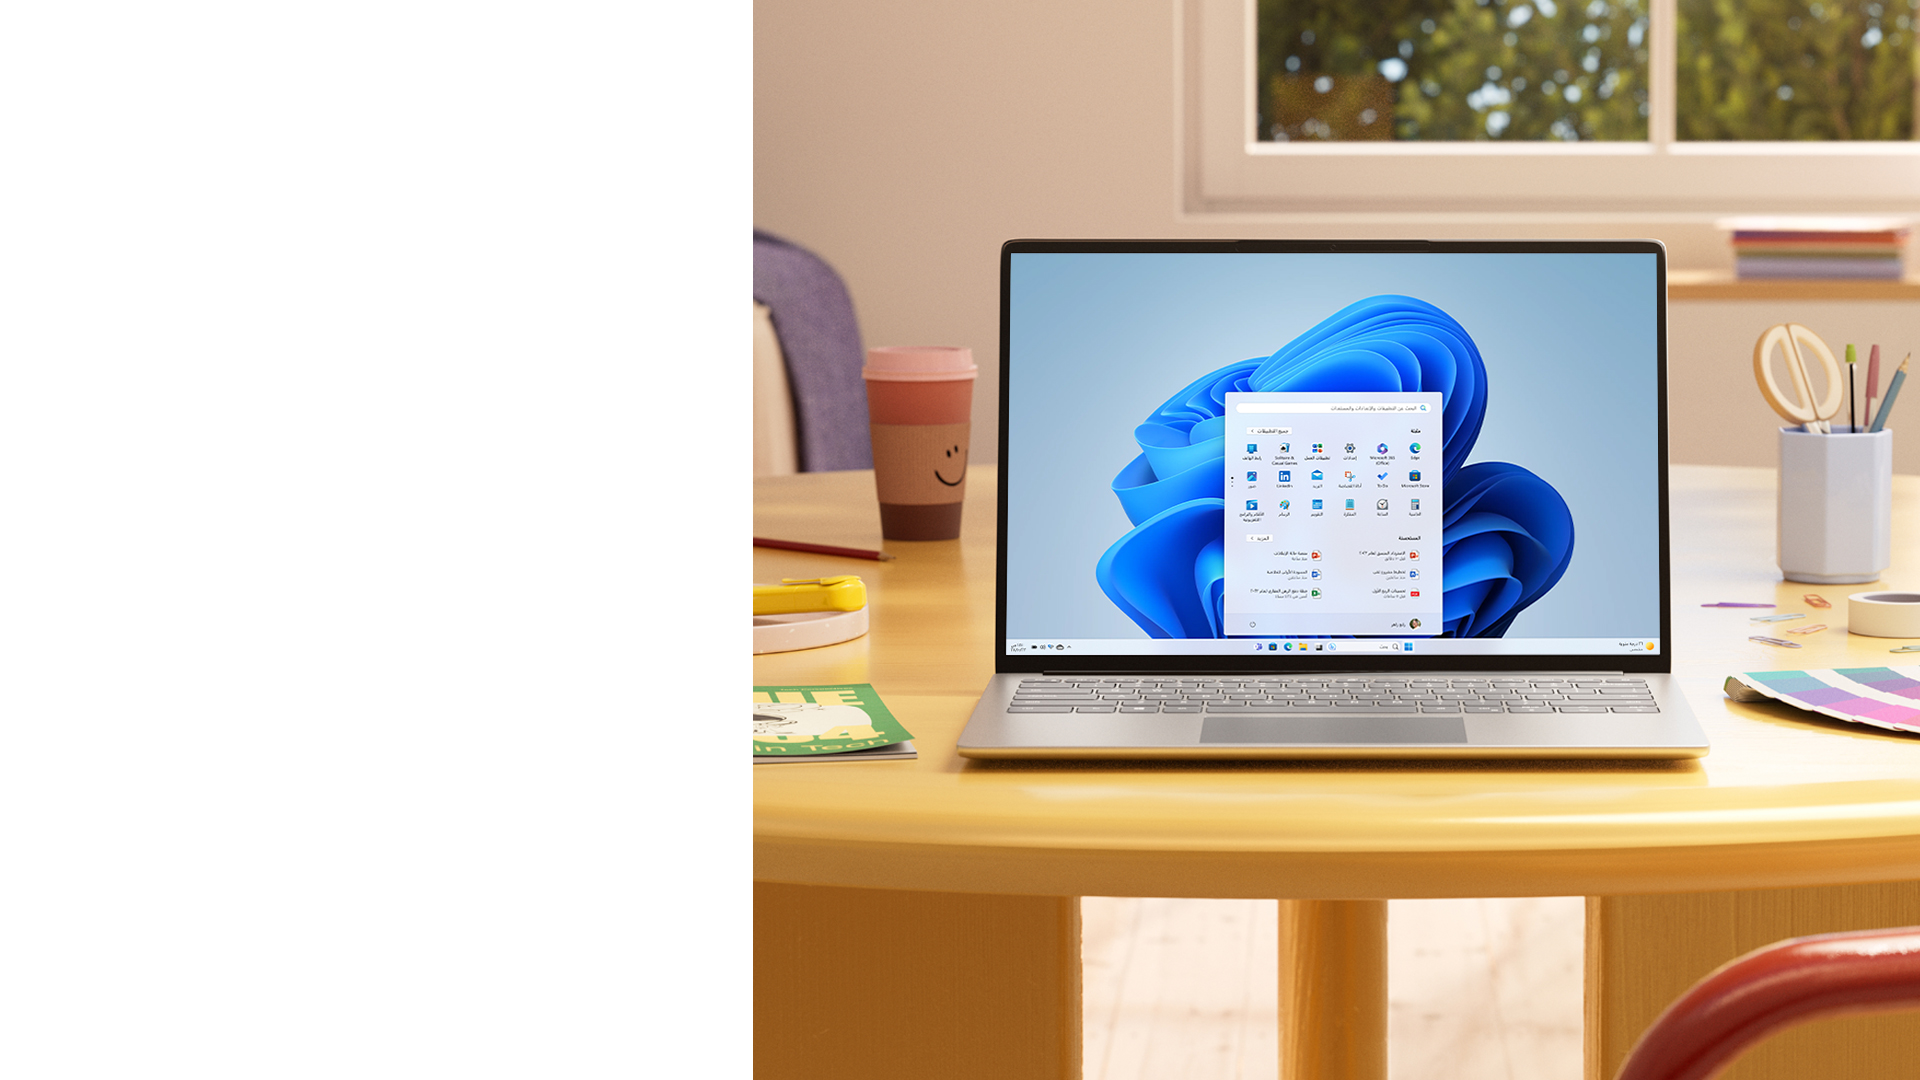 كمبيوتر شخصي يعمل بنظام Windows 11 يعرض قائمة "ابدأ" موضوع على طاولة